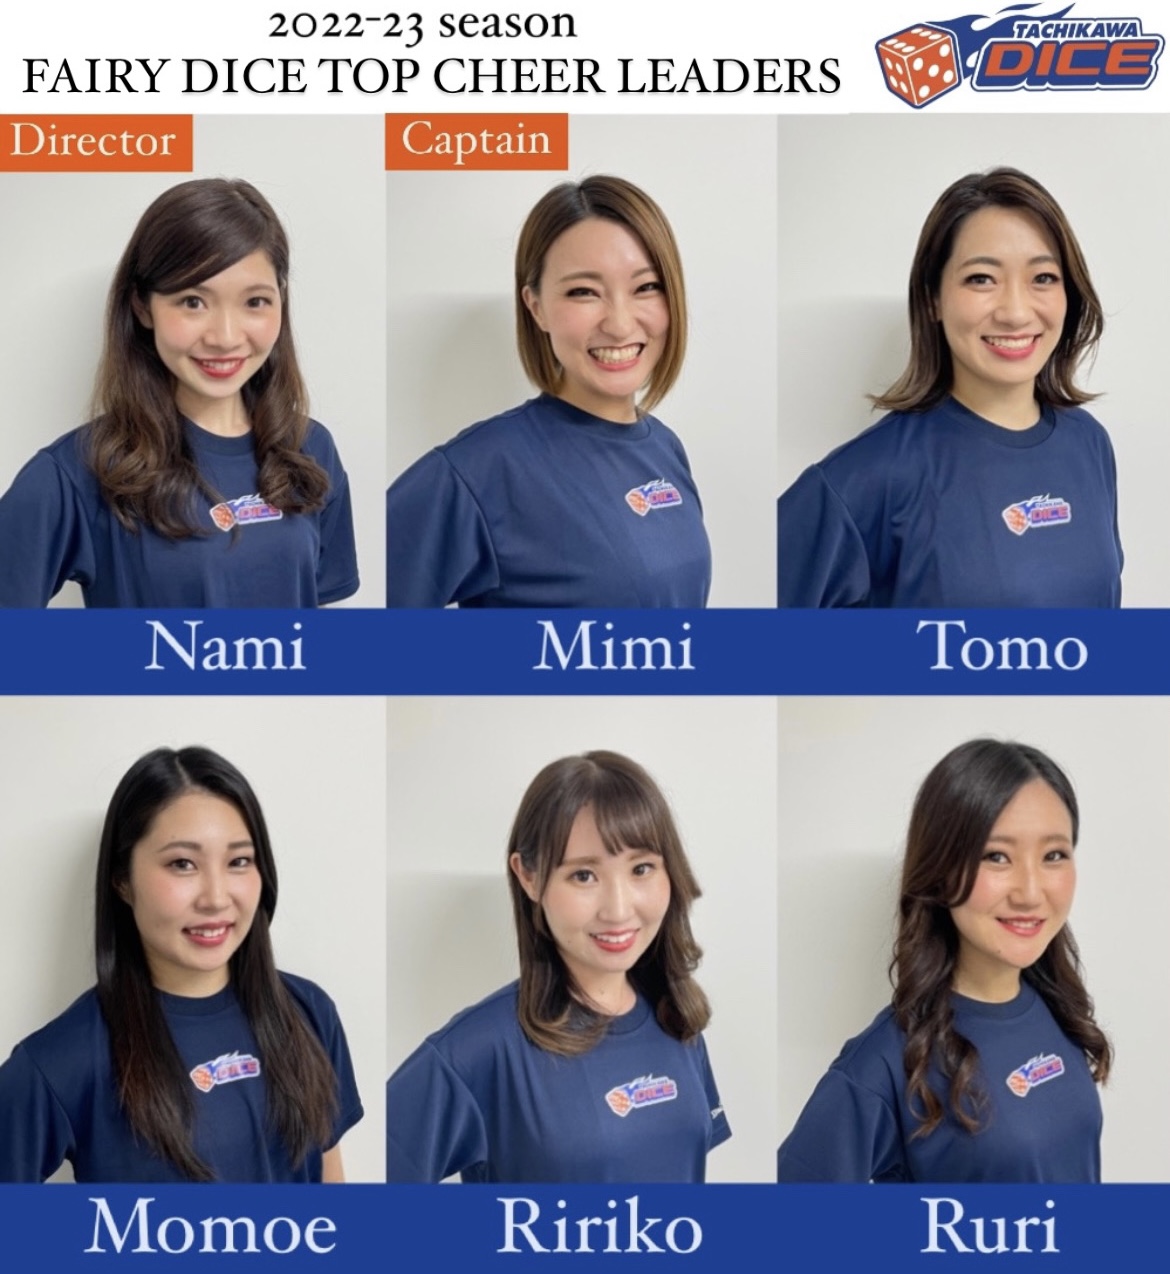 2022-23シーズン FairyDICE TOP CHEER LEADERS初代メンバー決定のお知らせ